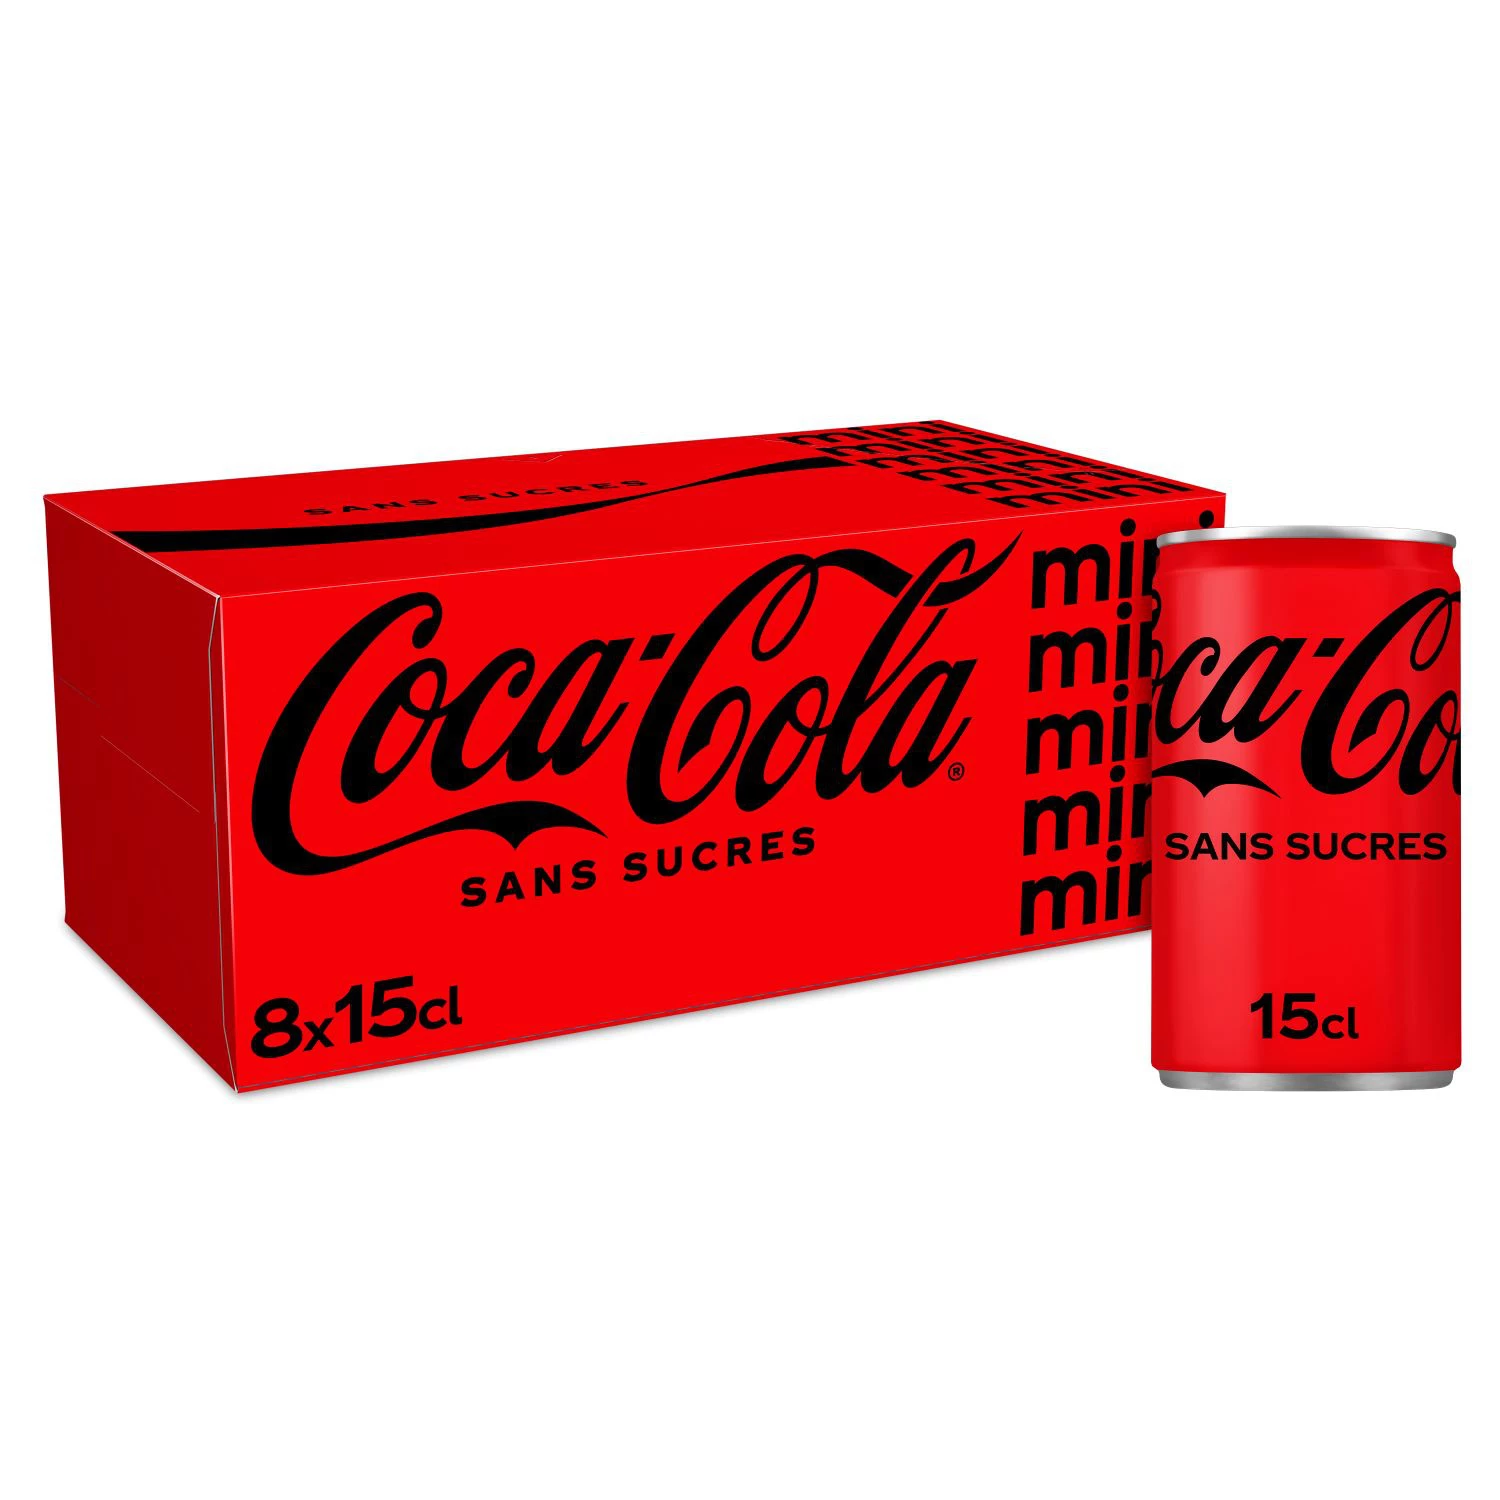 Coca-cola Z.bte 15clx8 M.frig